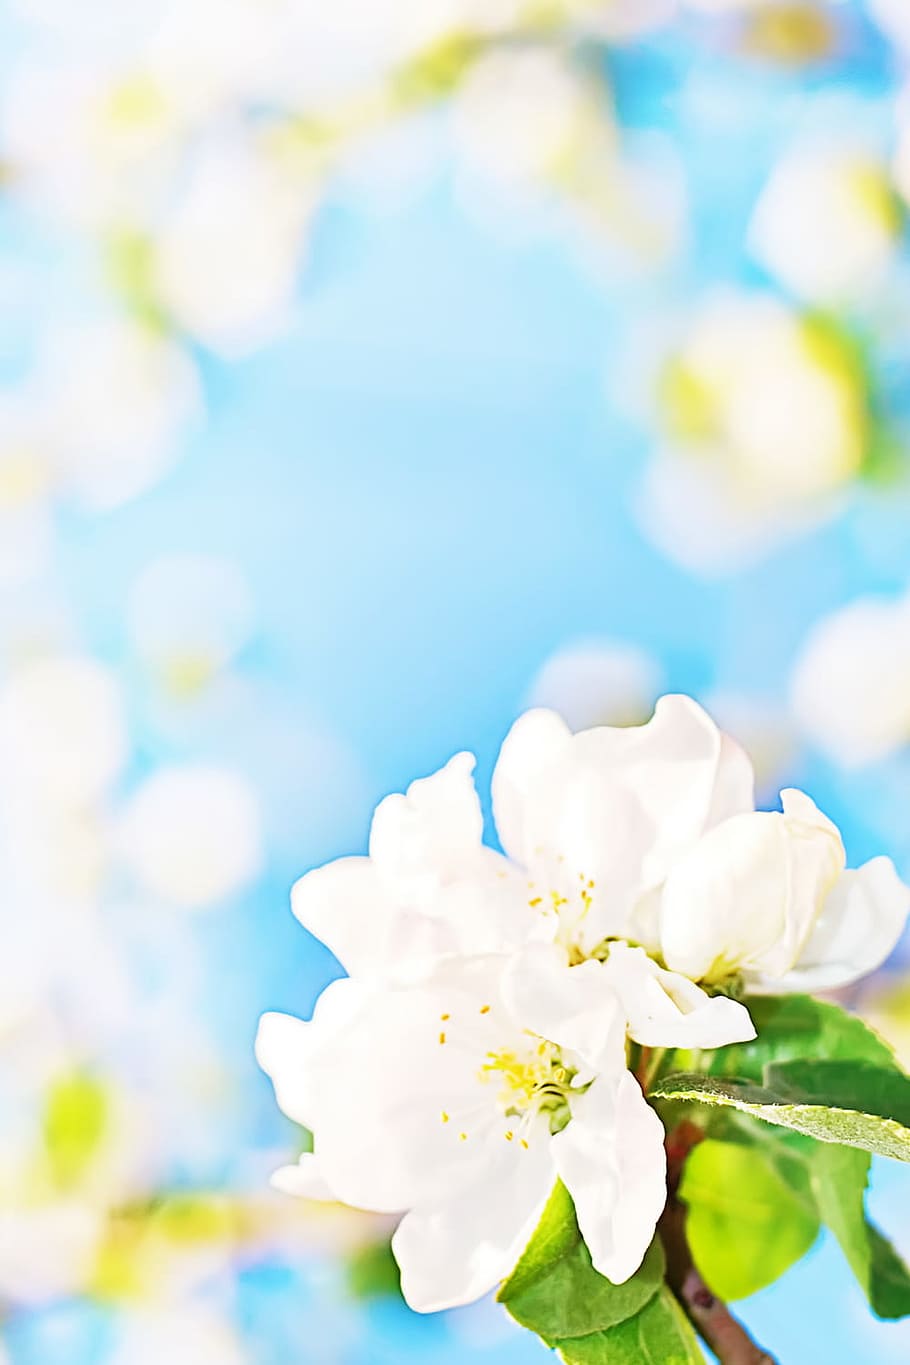 putih, bunga-bunga, abstrak, april, latar belakang, cantik, mekar, biru, dedaunan, alam